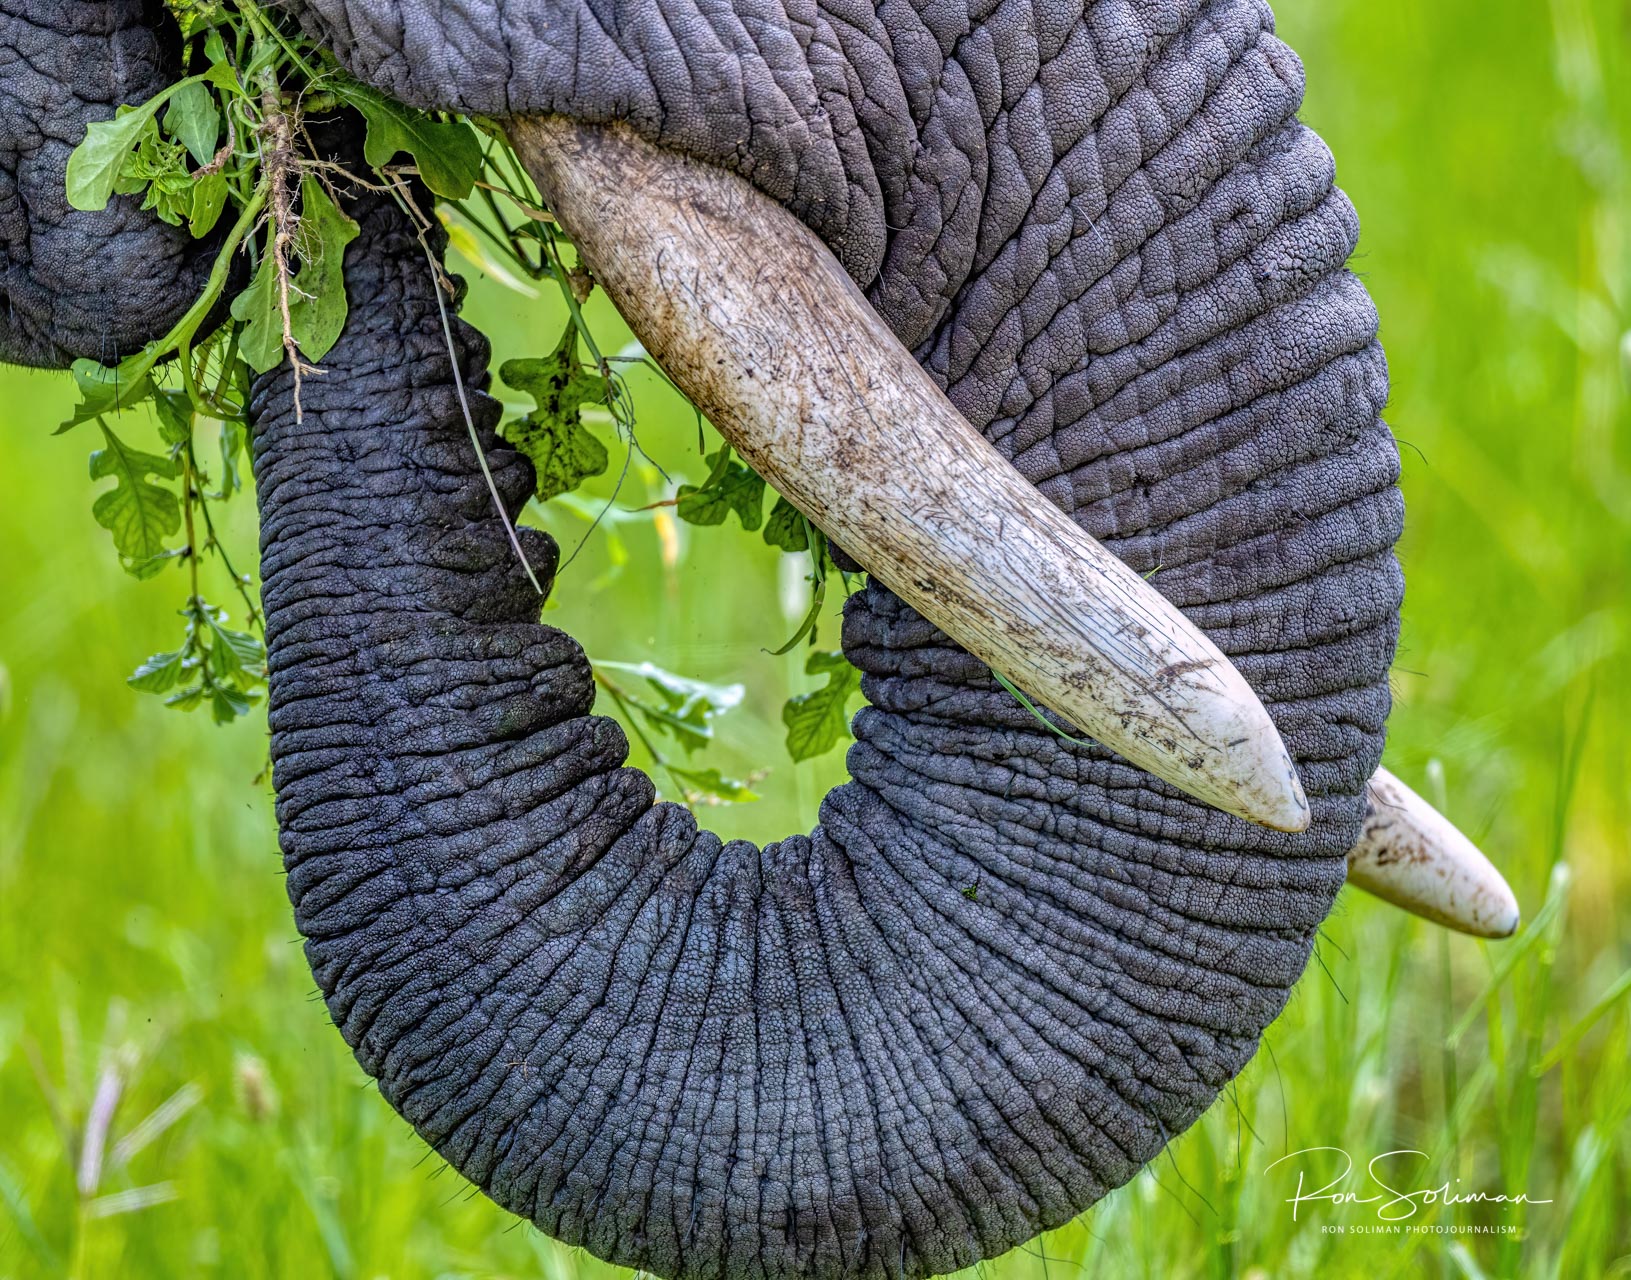 Best Wildlife photography elephant tusk